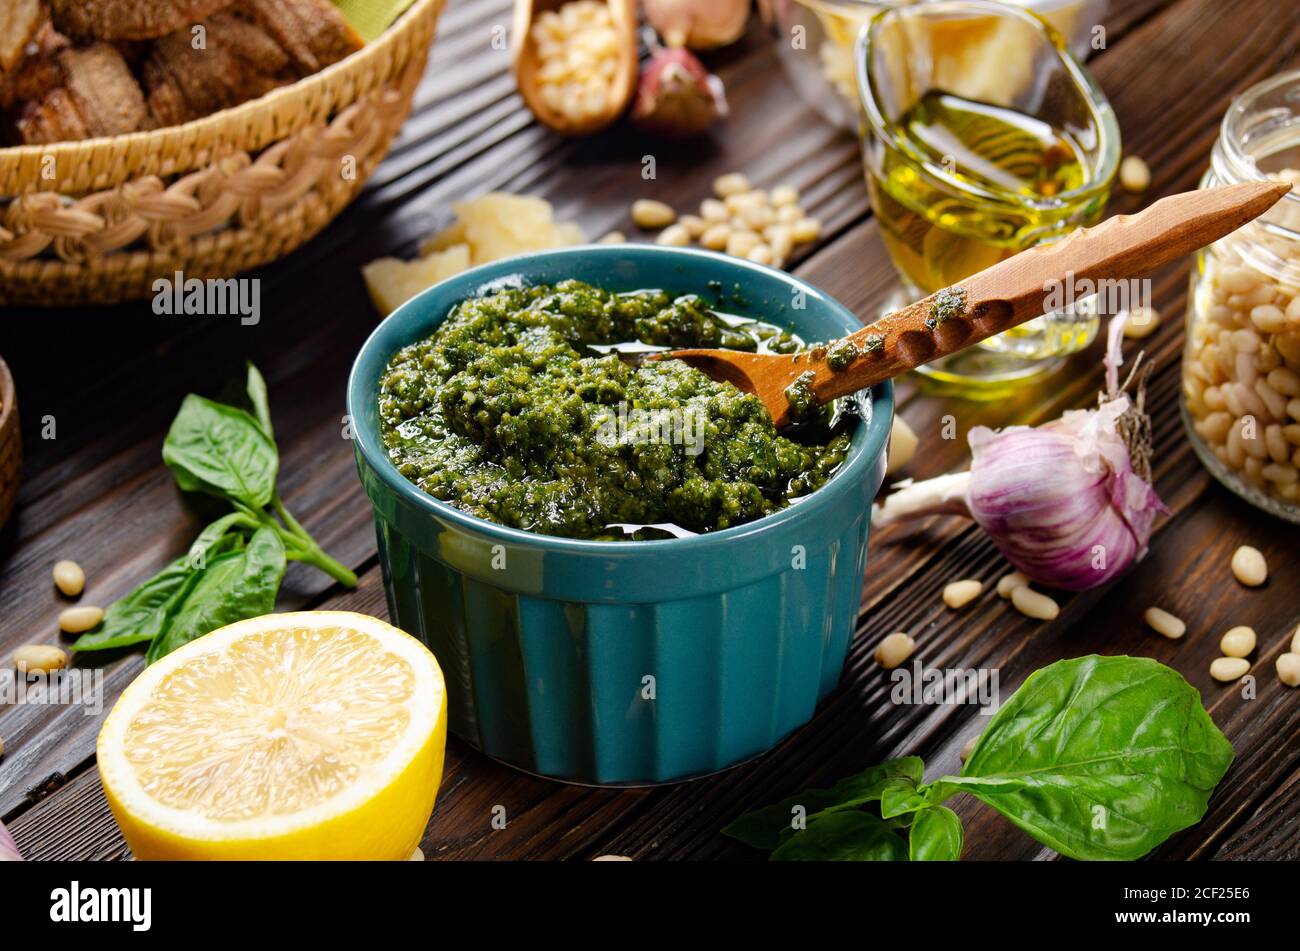 Fondo alimentare di pesto genovese e i suoi ingredienti che rappresentano la cucina mediterranea. Foto Stock